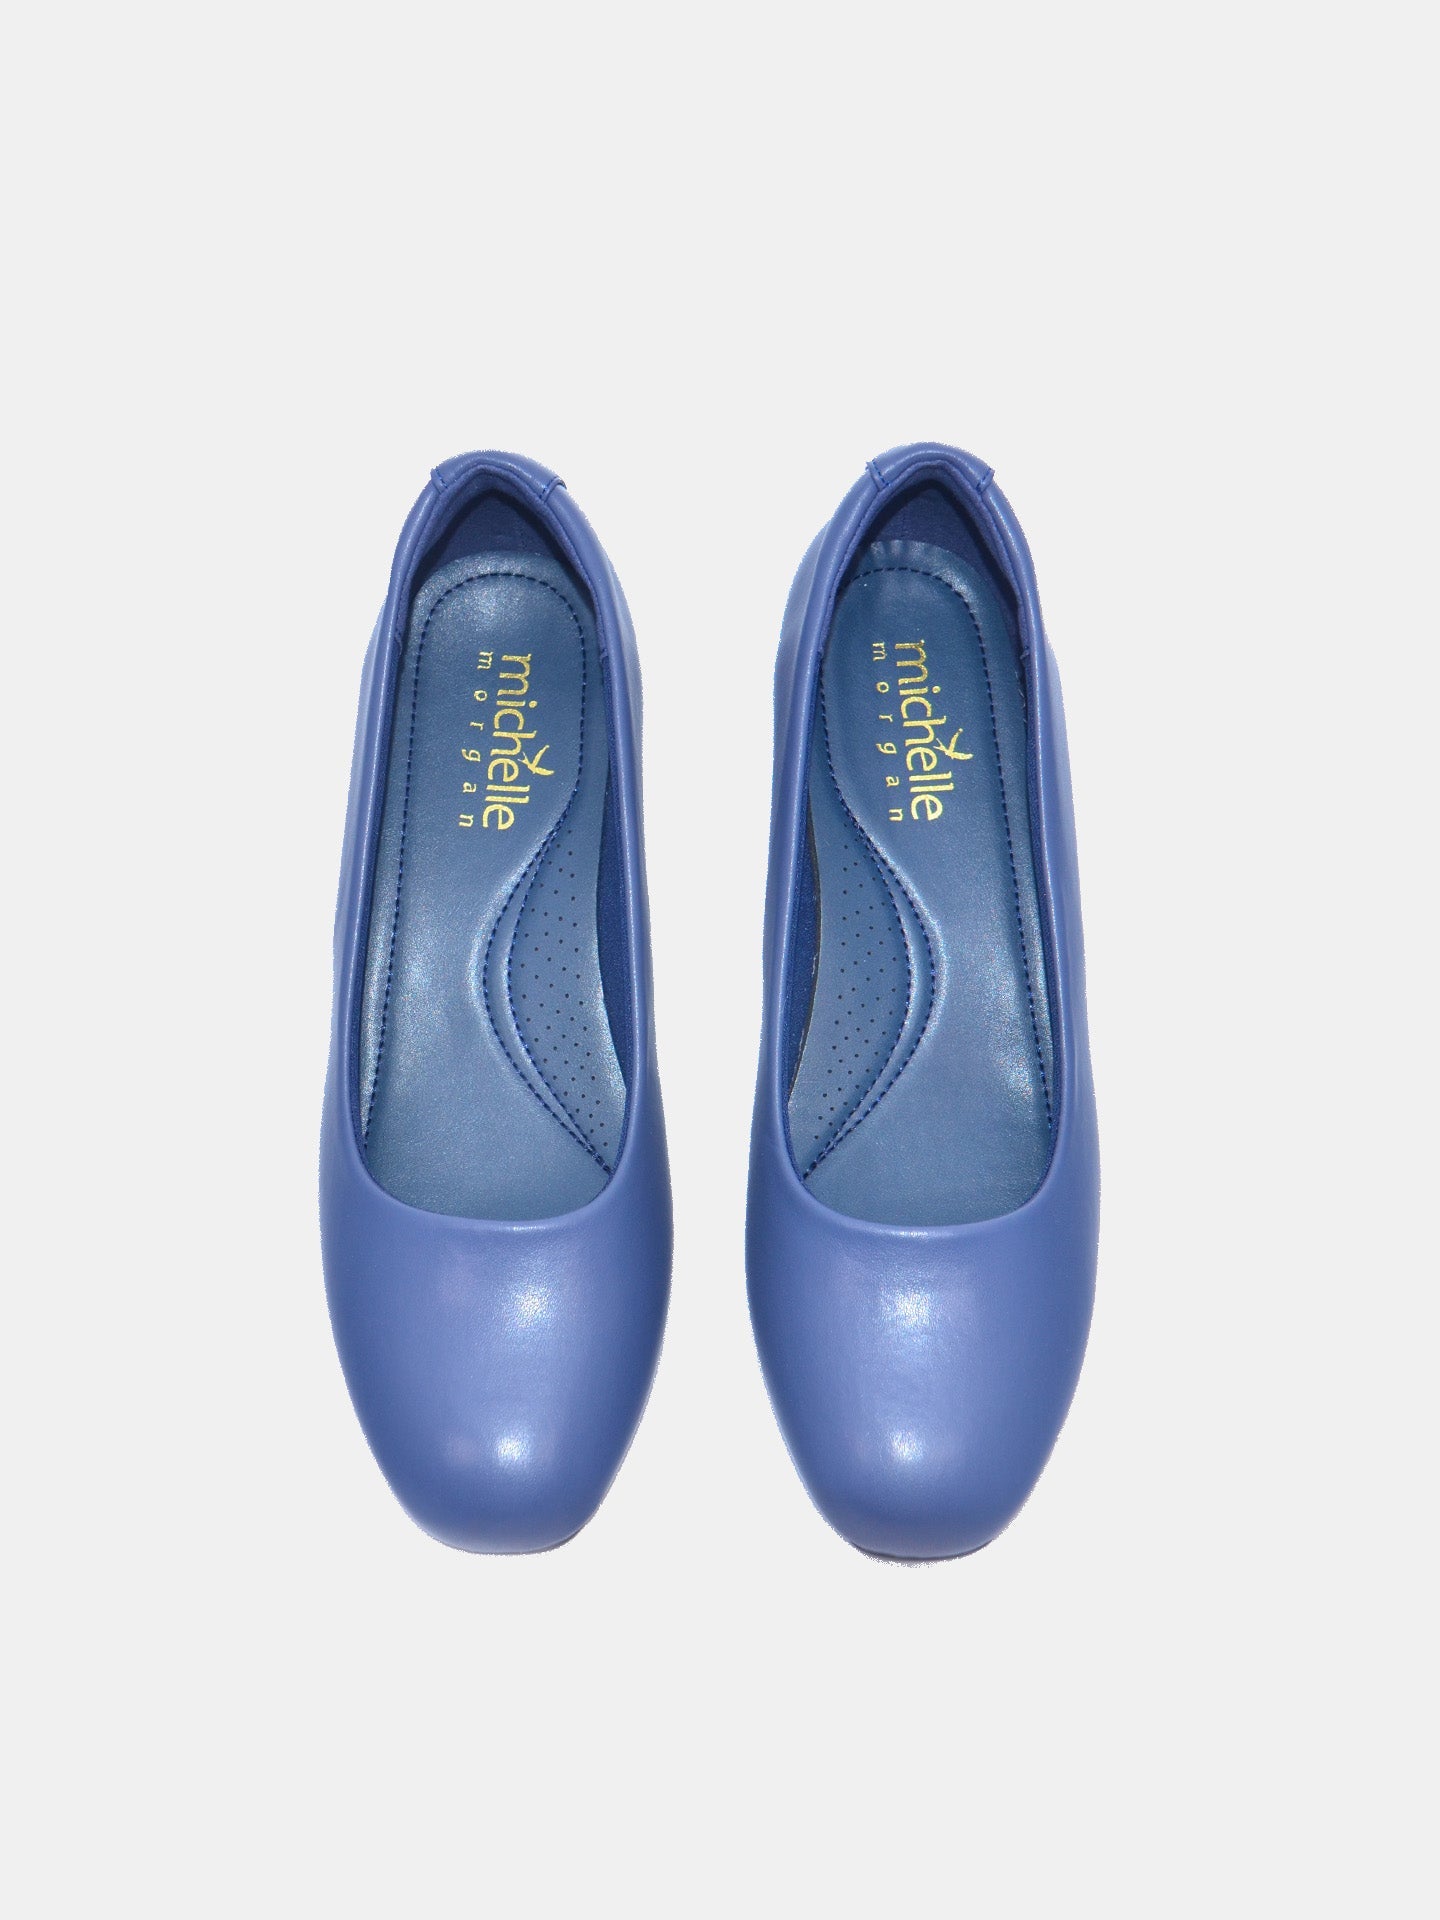 Michelle Morgan 219JT507 Women's Heeled Sandals #color_Blue